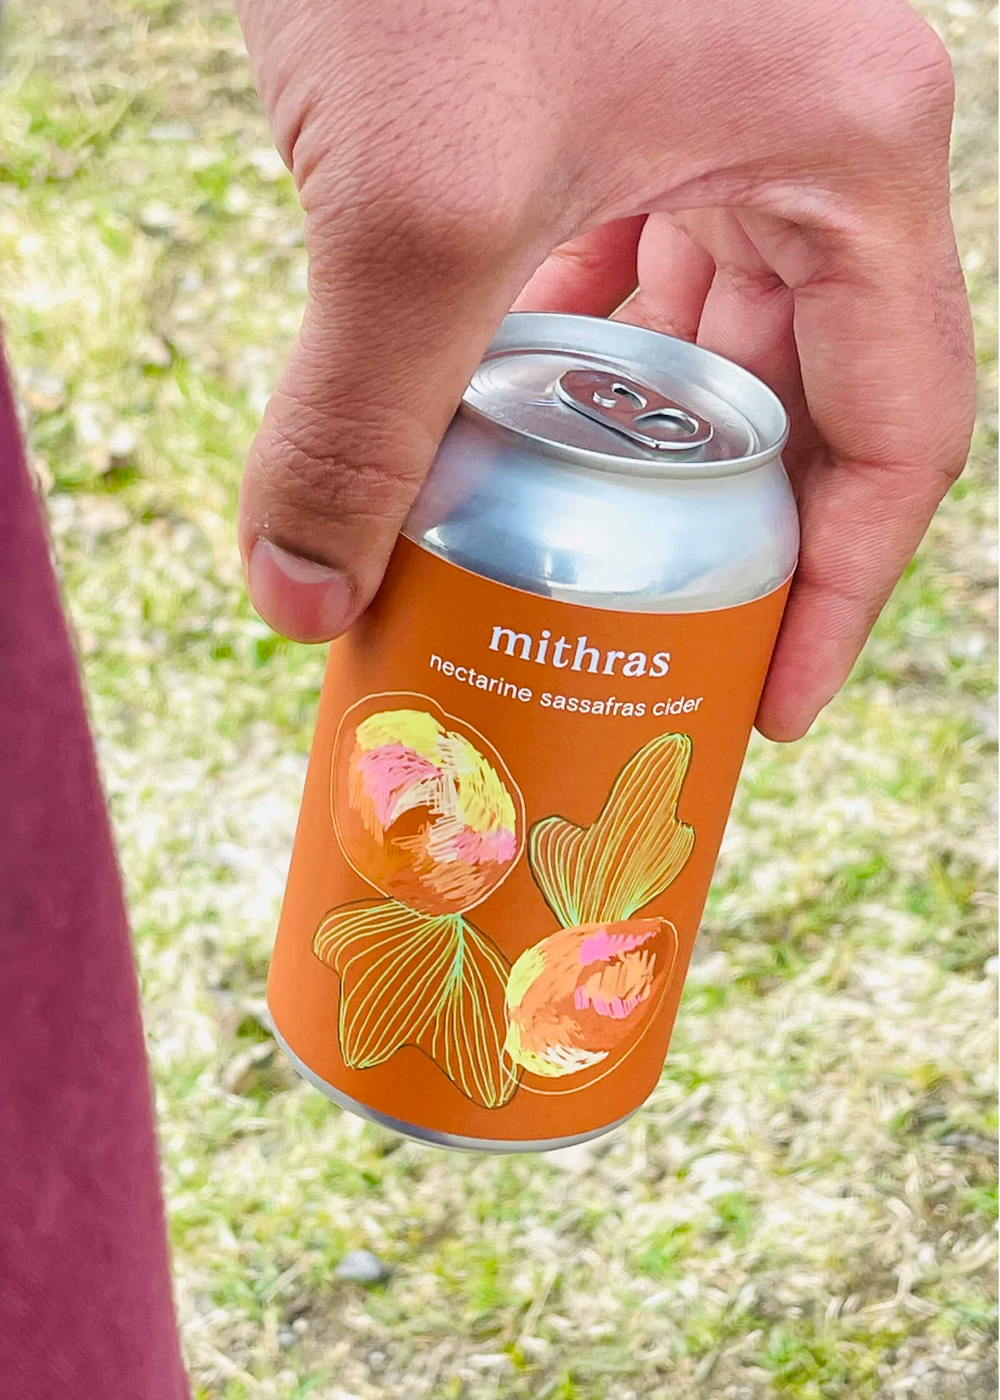 MITHRAS | Nectarine Sassafras Cider